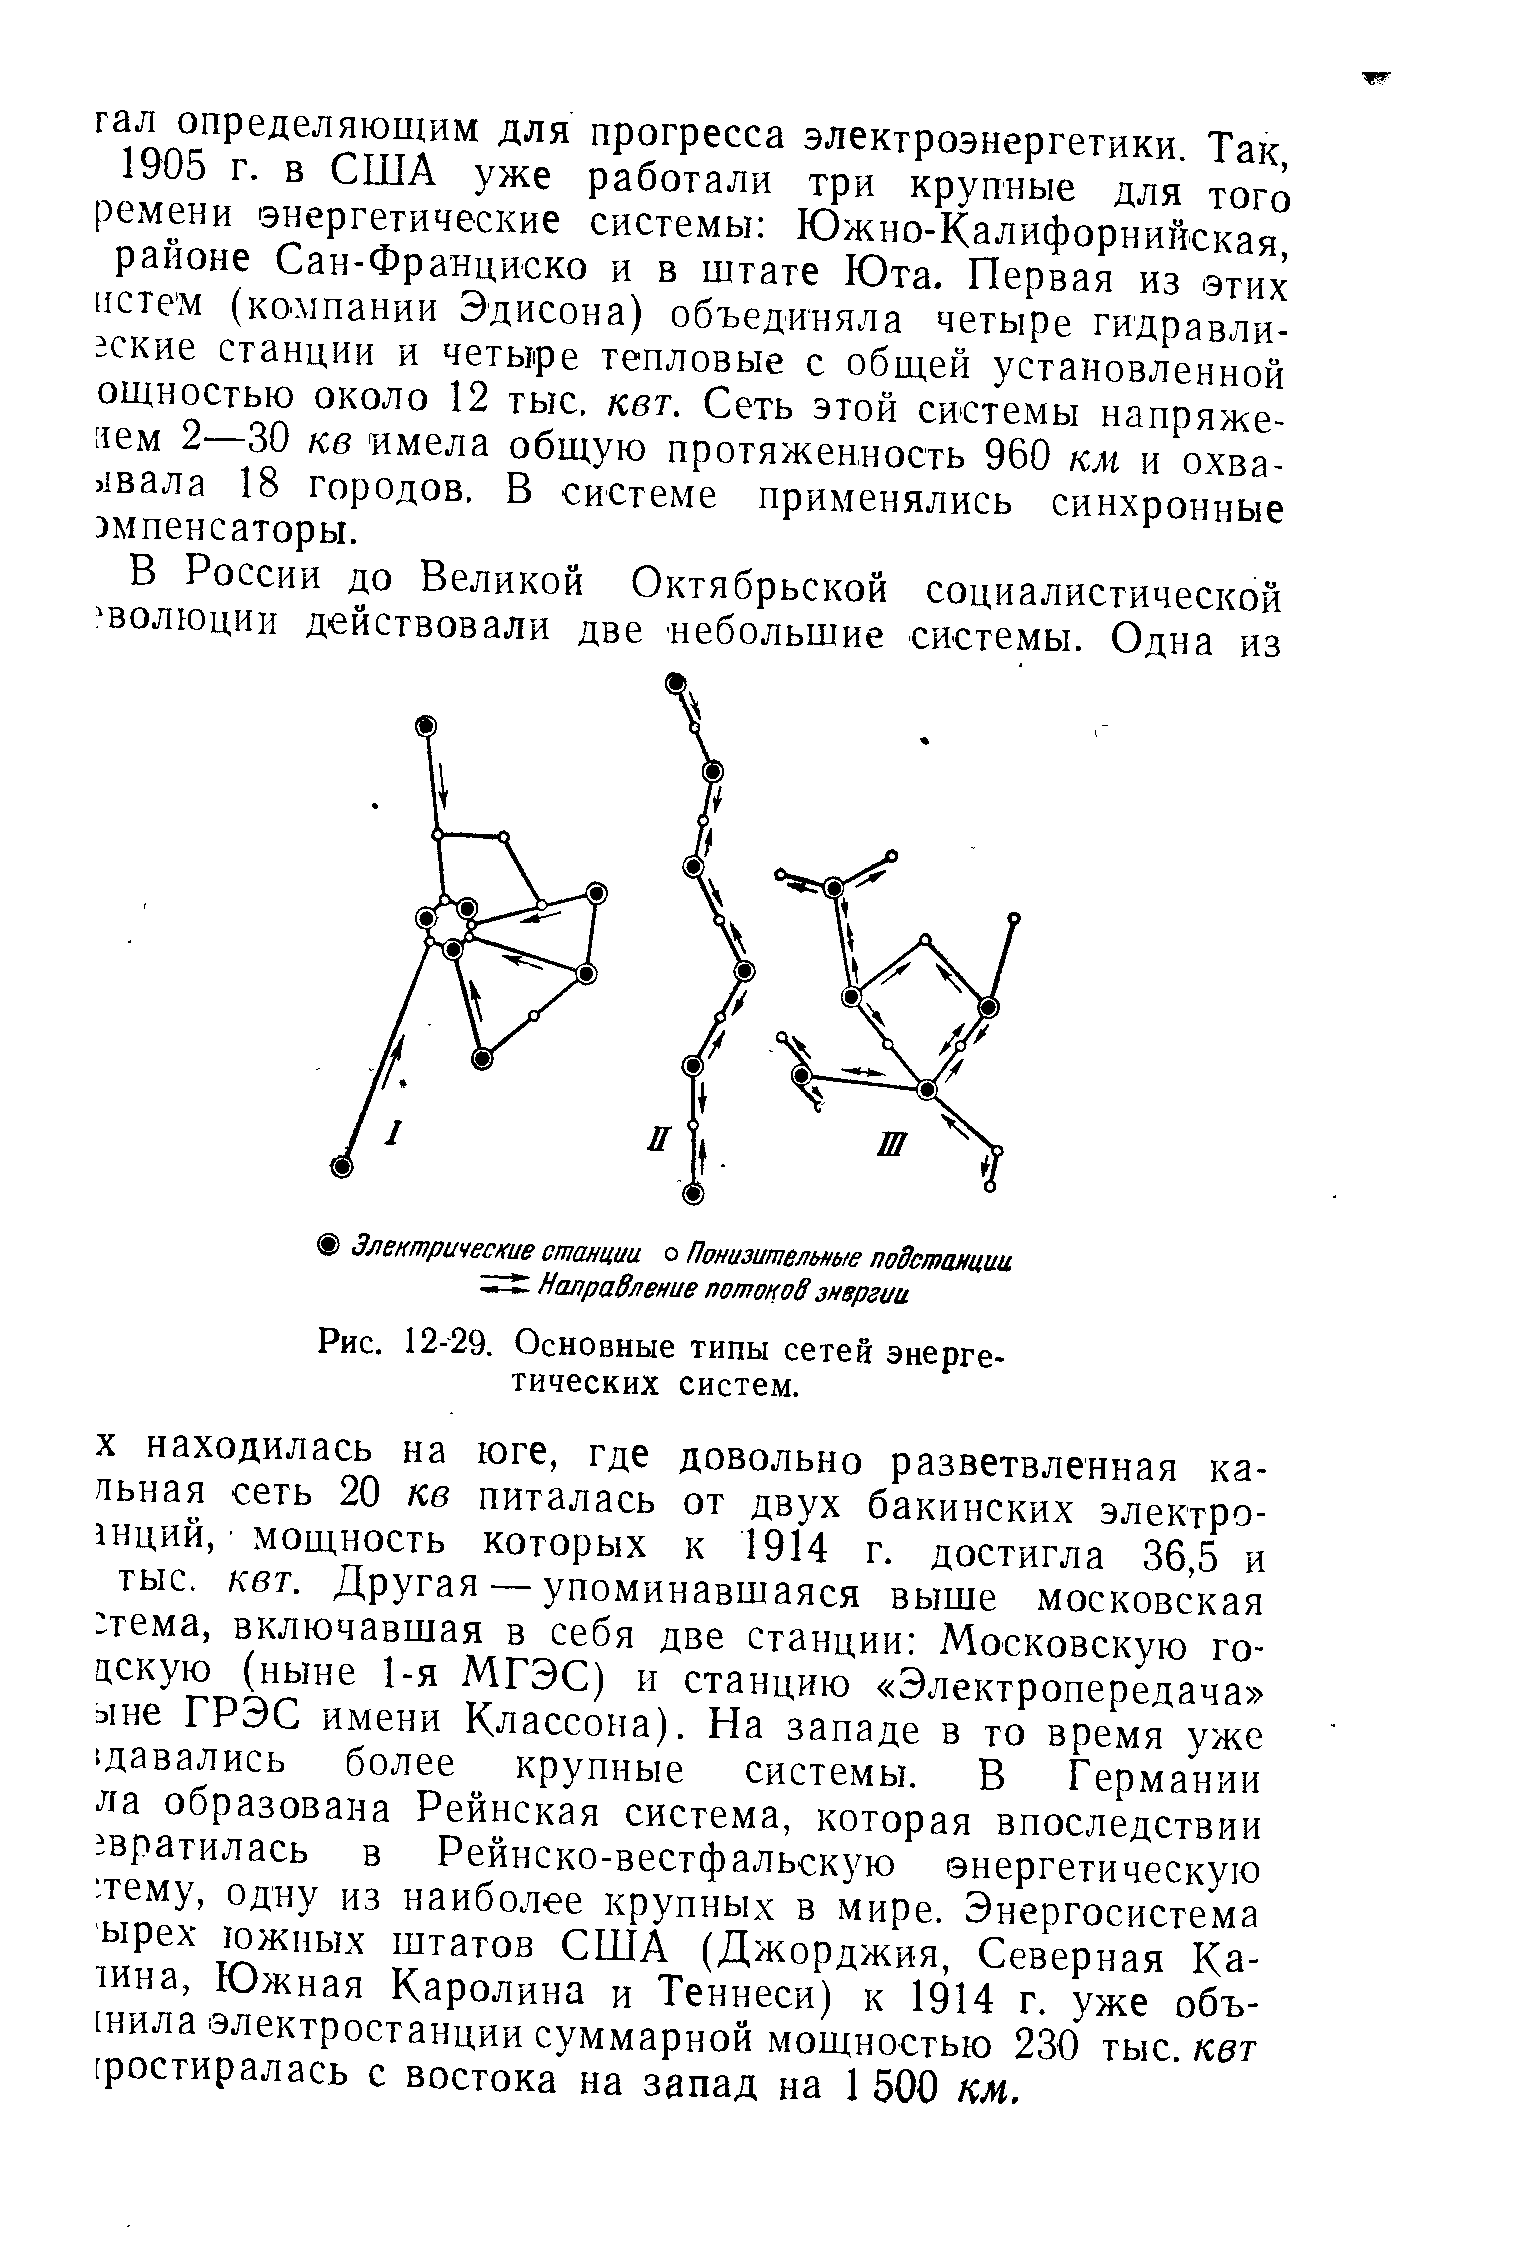 Рис. 12-29. Основные типы сетей энергетических систем.
